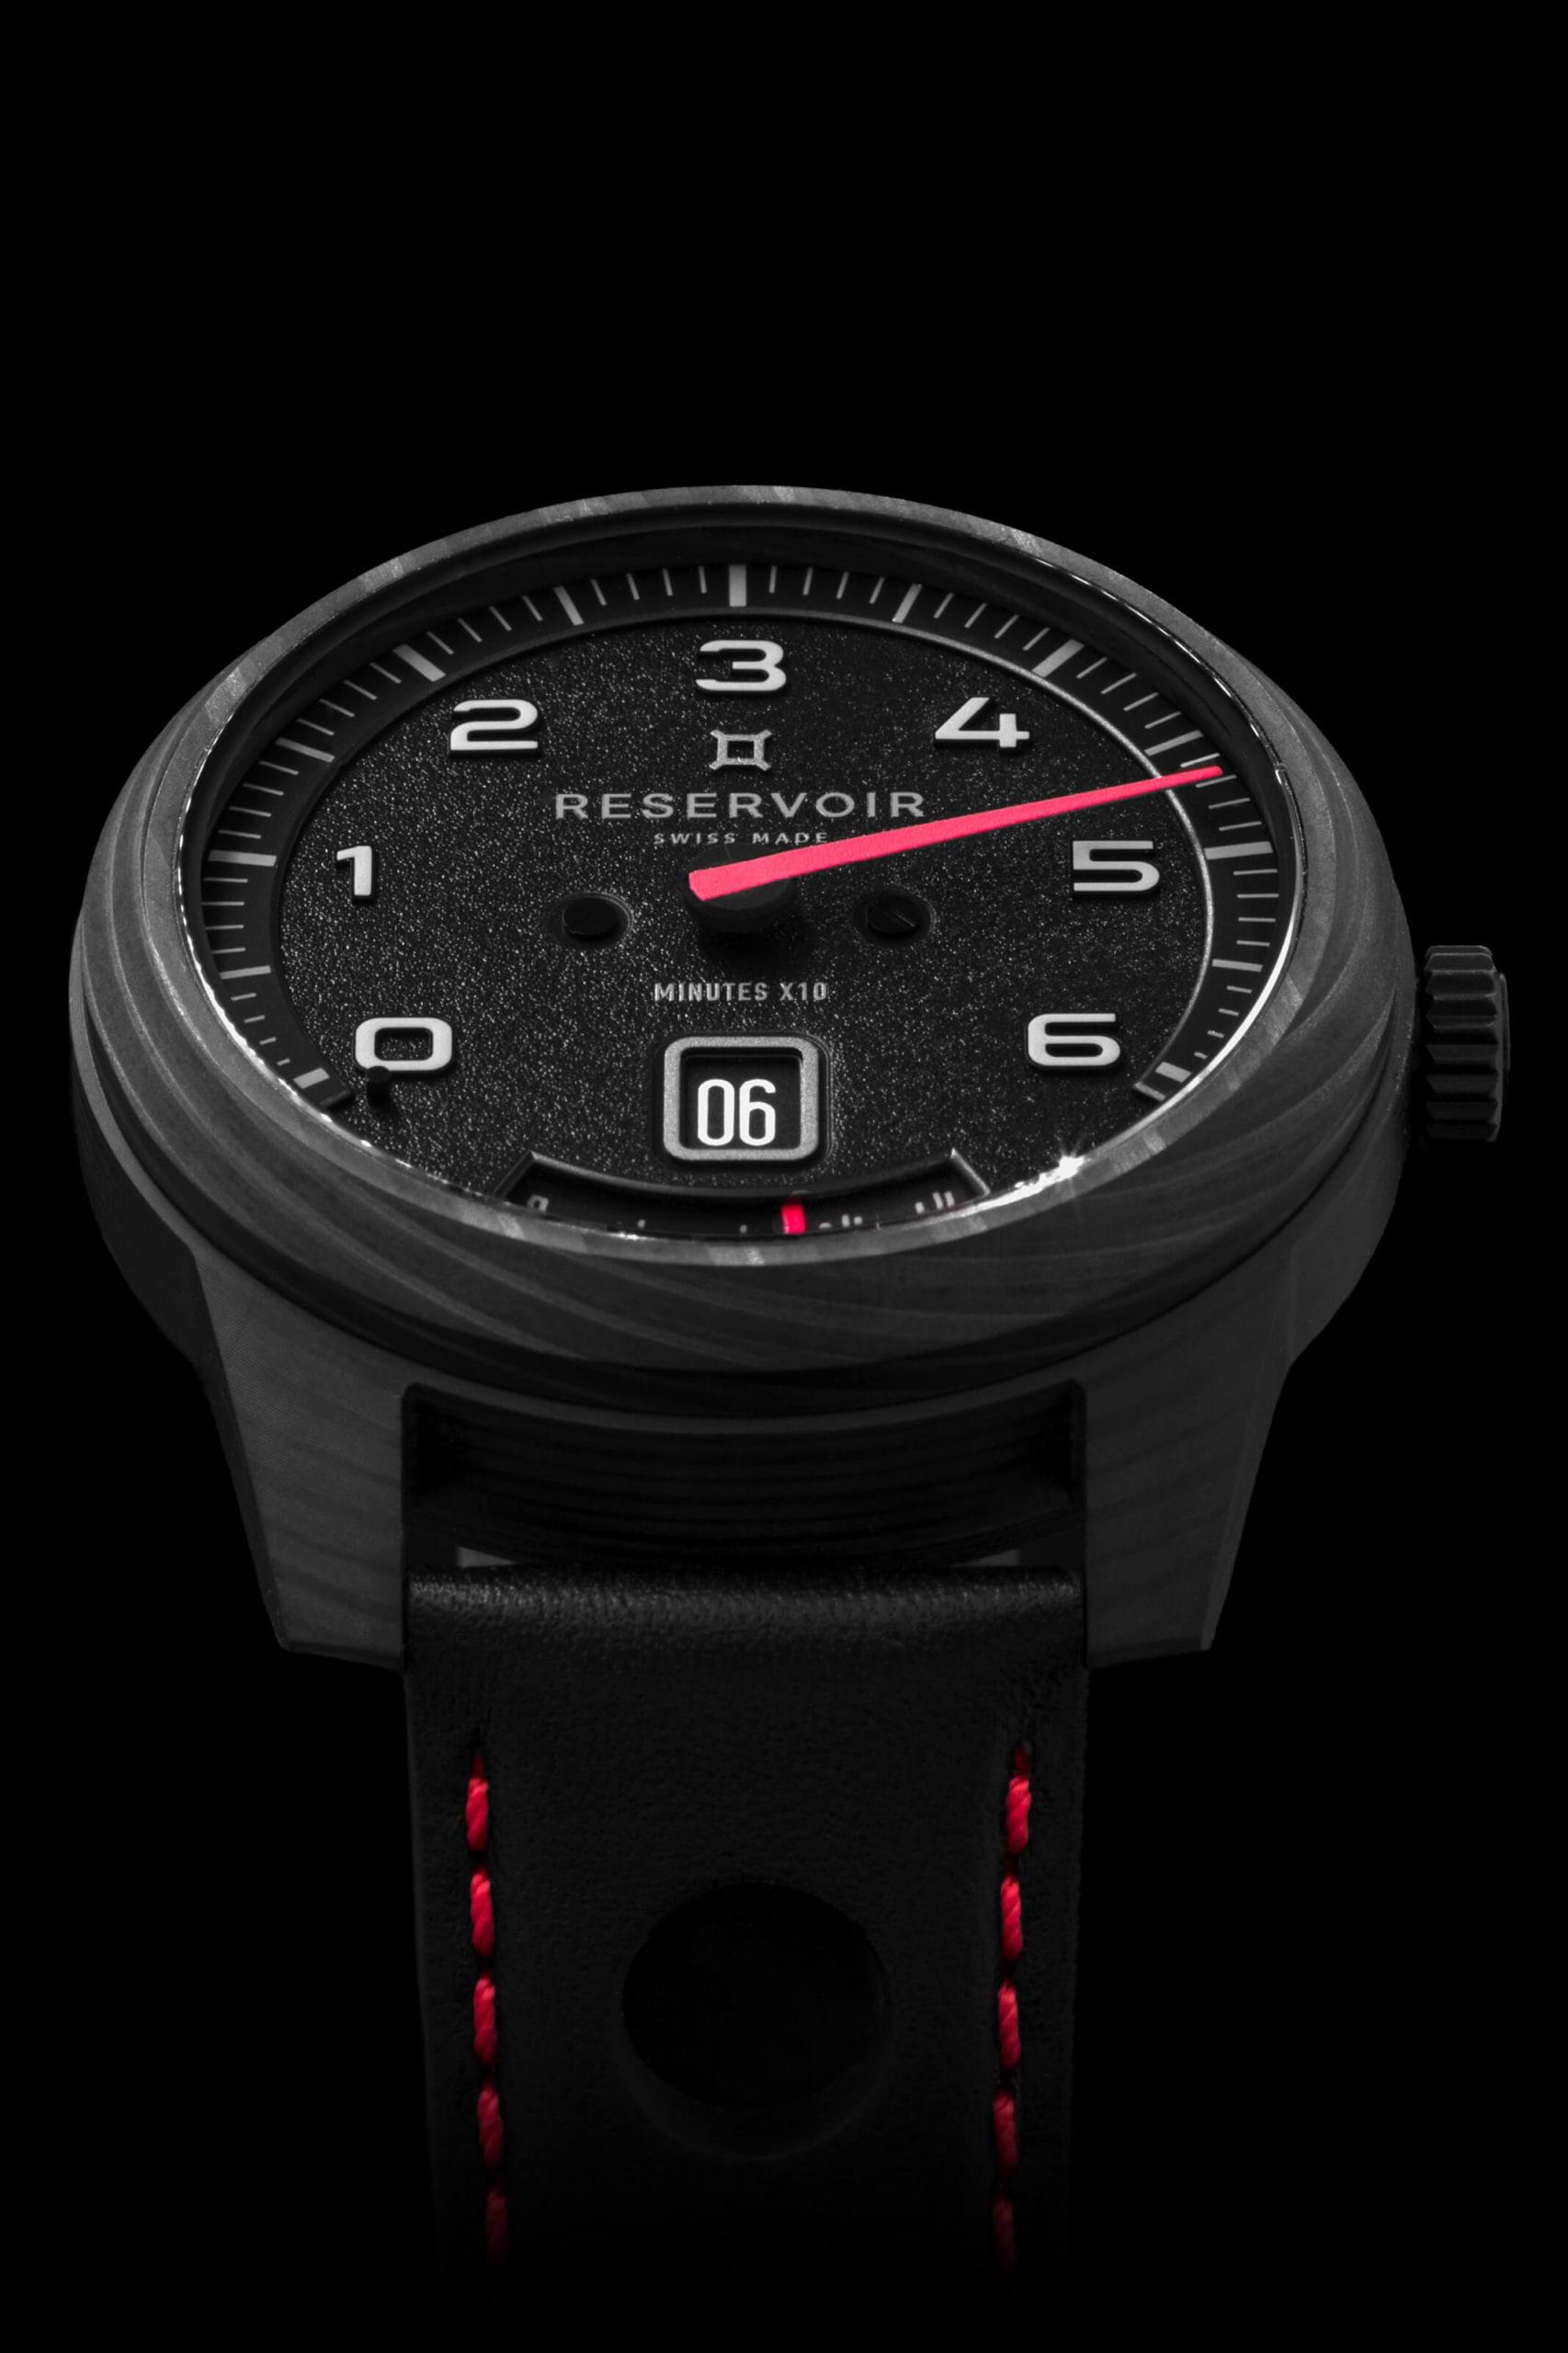 高級時計のメディア レゼルボワール ダークブラウン、ライトモーヴ、ライトグレーの3色の腕時計。